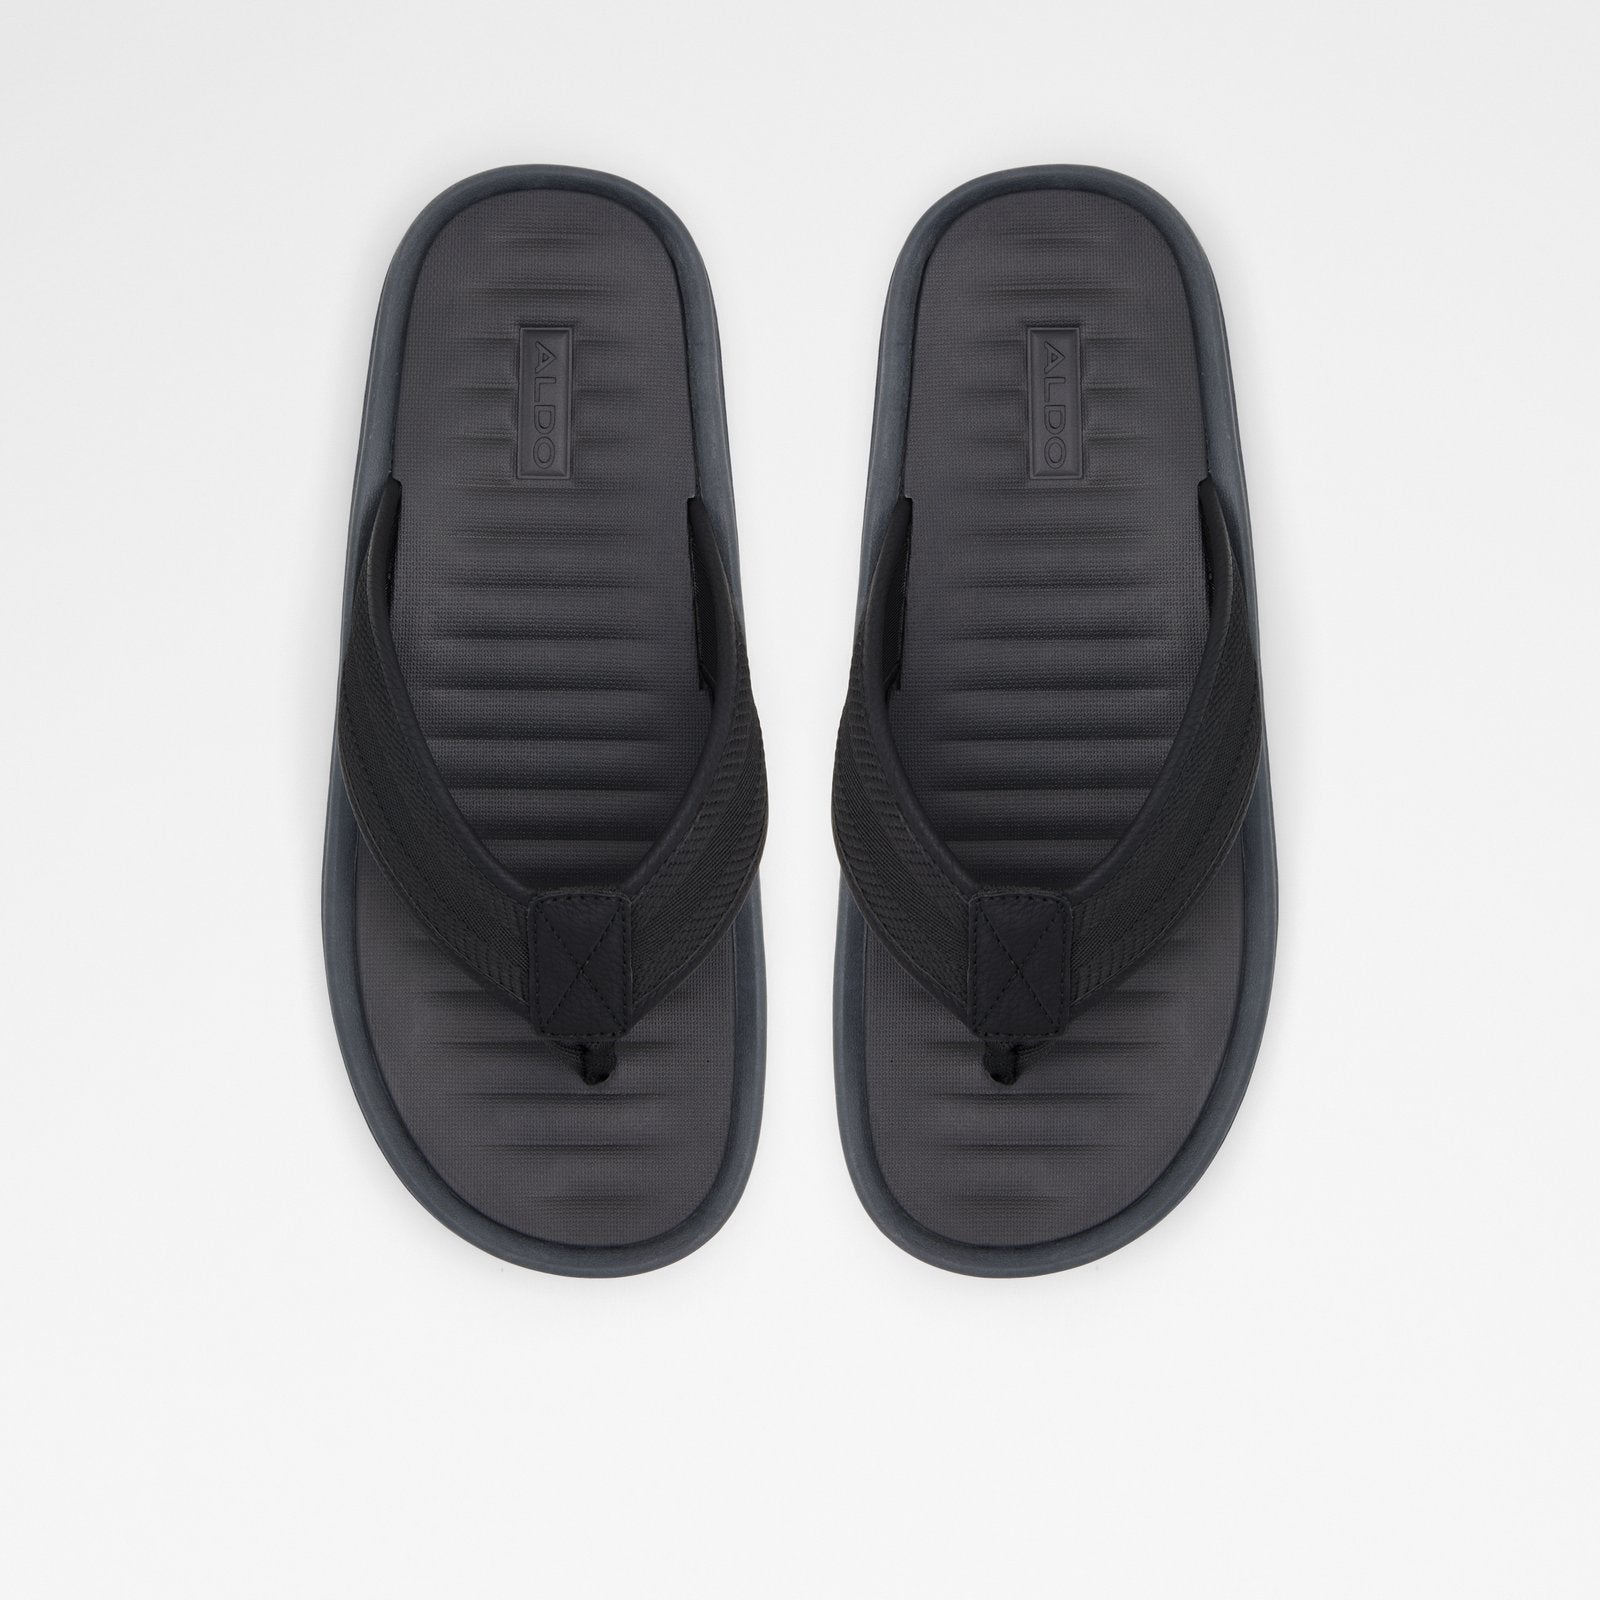 Ocerrach / Flat Sandals Men Shoes - Black - ALDO KSA